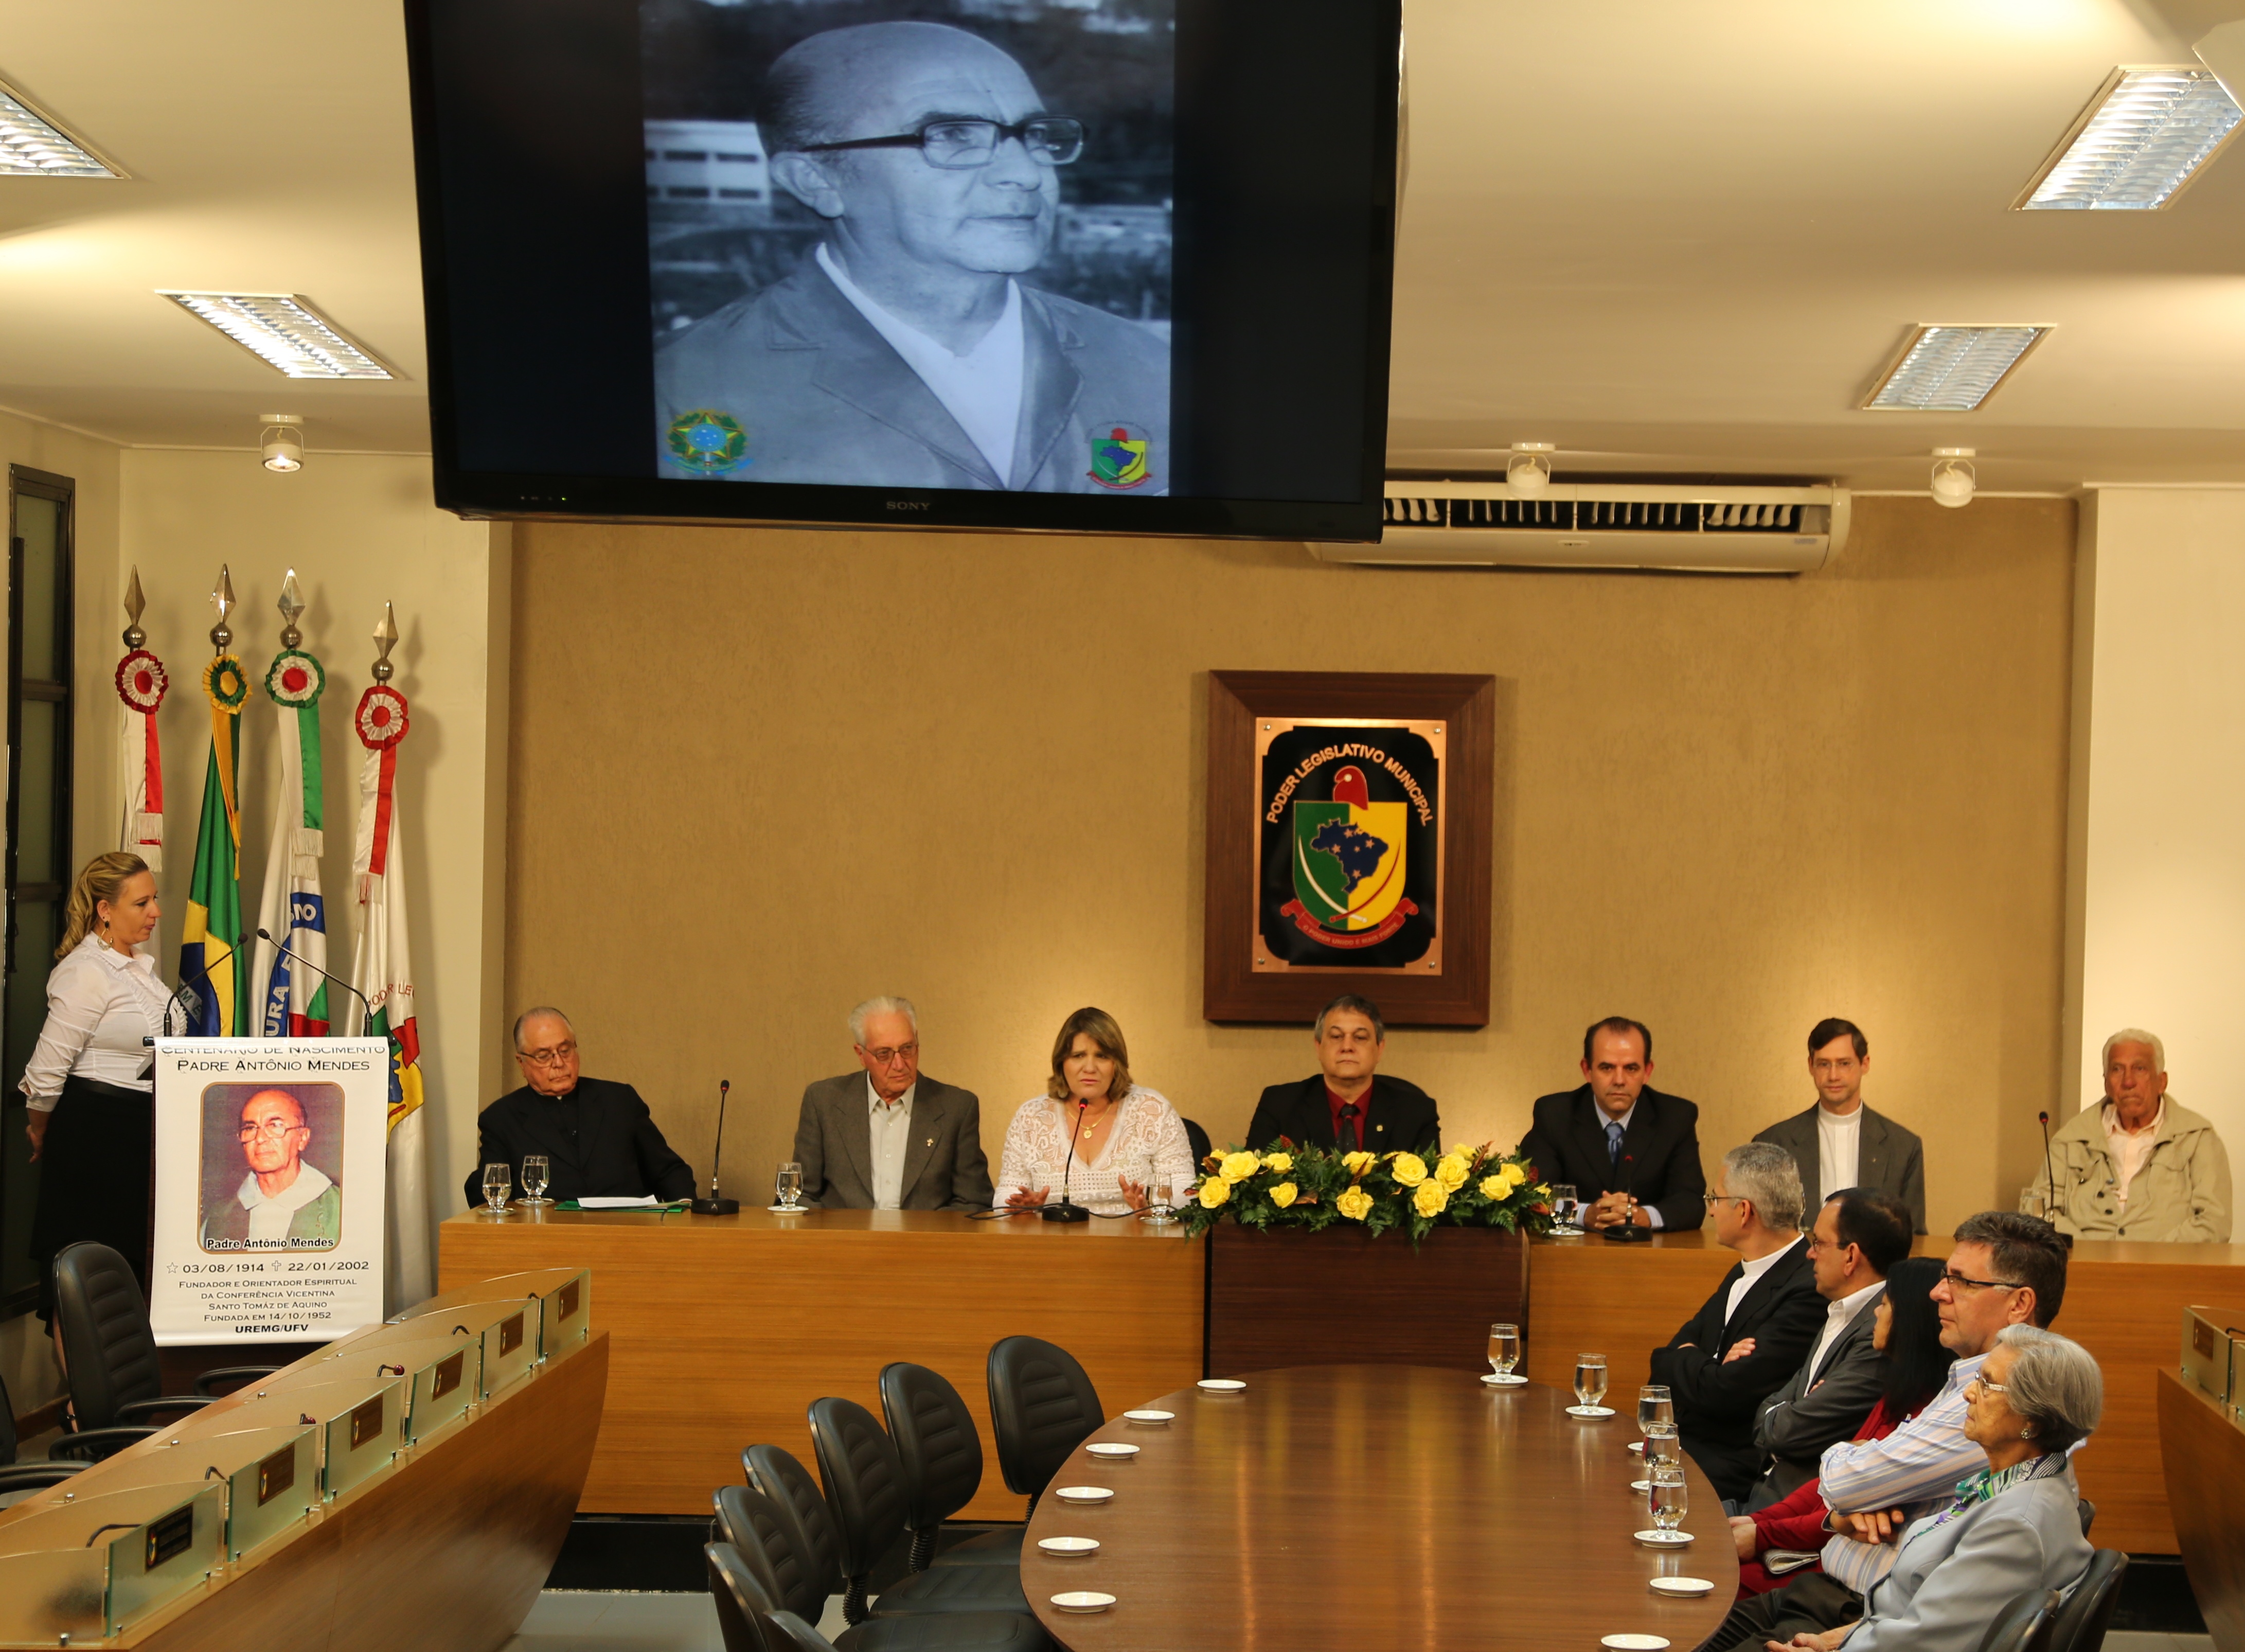 Câmara realiza homenagem ao centenário natalício do Cônego Antônio Mendes